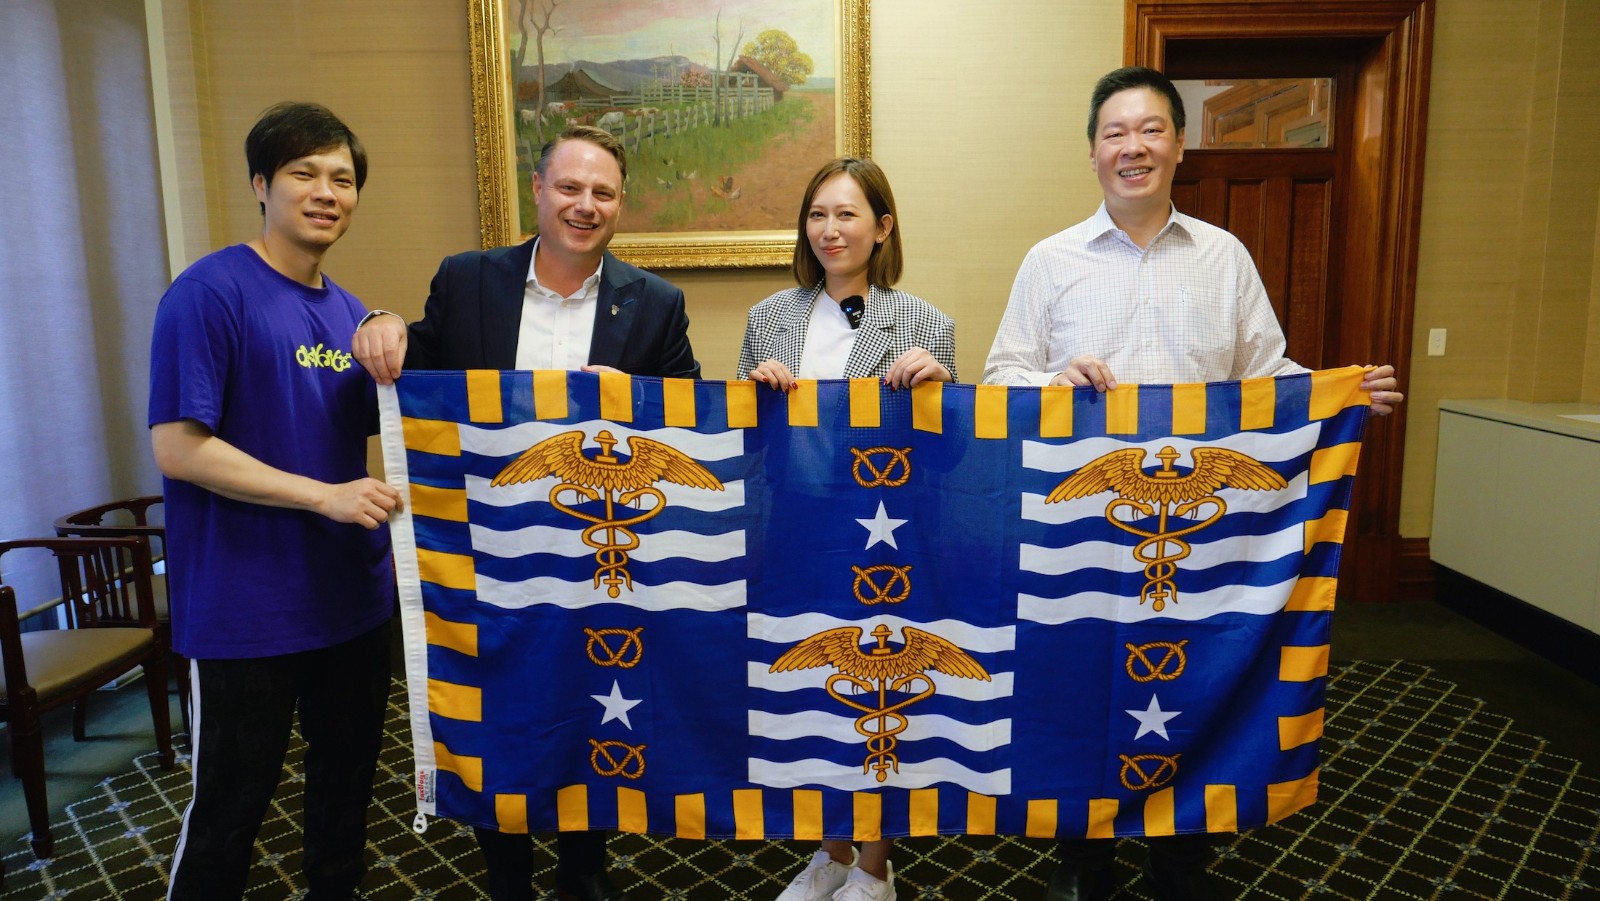 Mavis玛菲司受澳洲市长亲邀  担任“澳洲昆士兰观光大使”